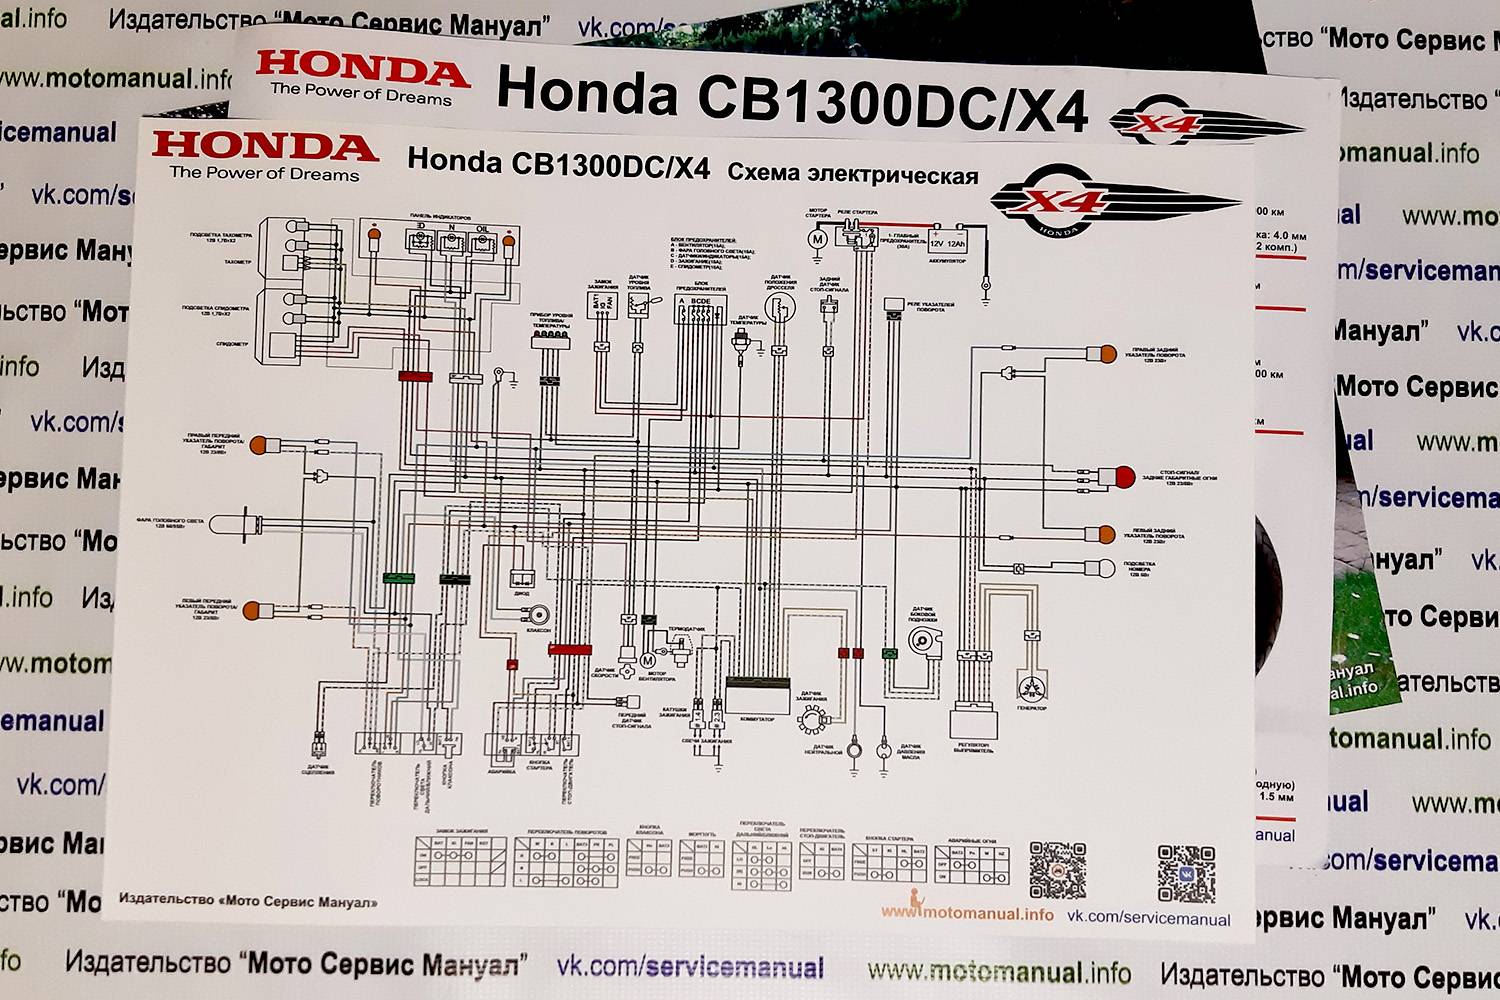 ▷ honda cb1300 manual, honda motorcycle cb1300 owner's manual (194 pages) | guidessimo.com